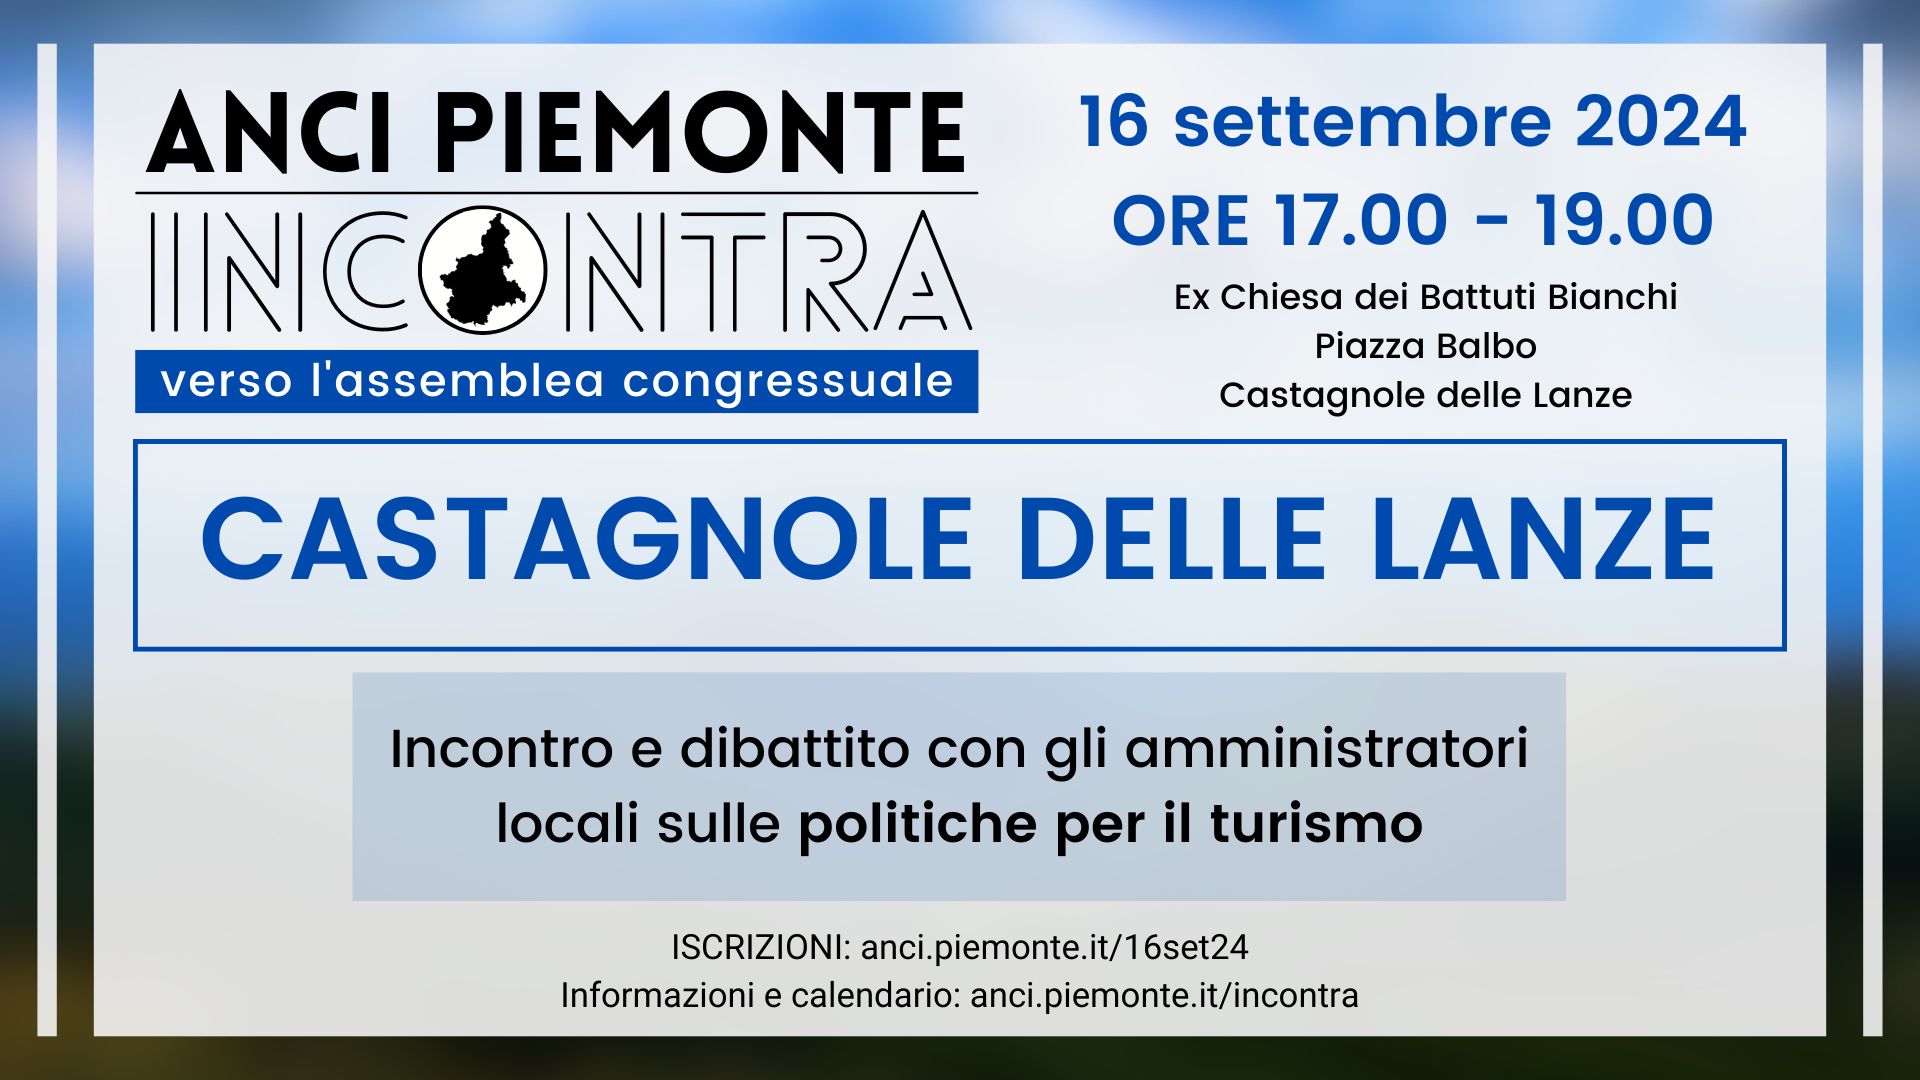 ANCI Piemonte Incontra - Castagnole delle Lanze - 16 settembre 2024